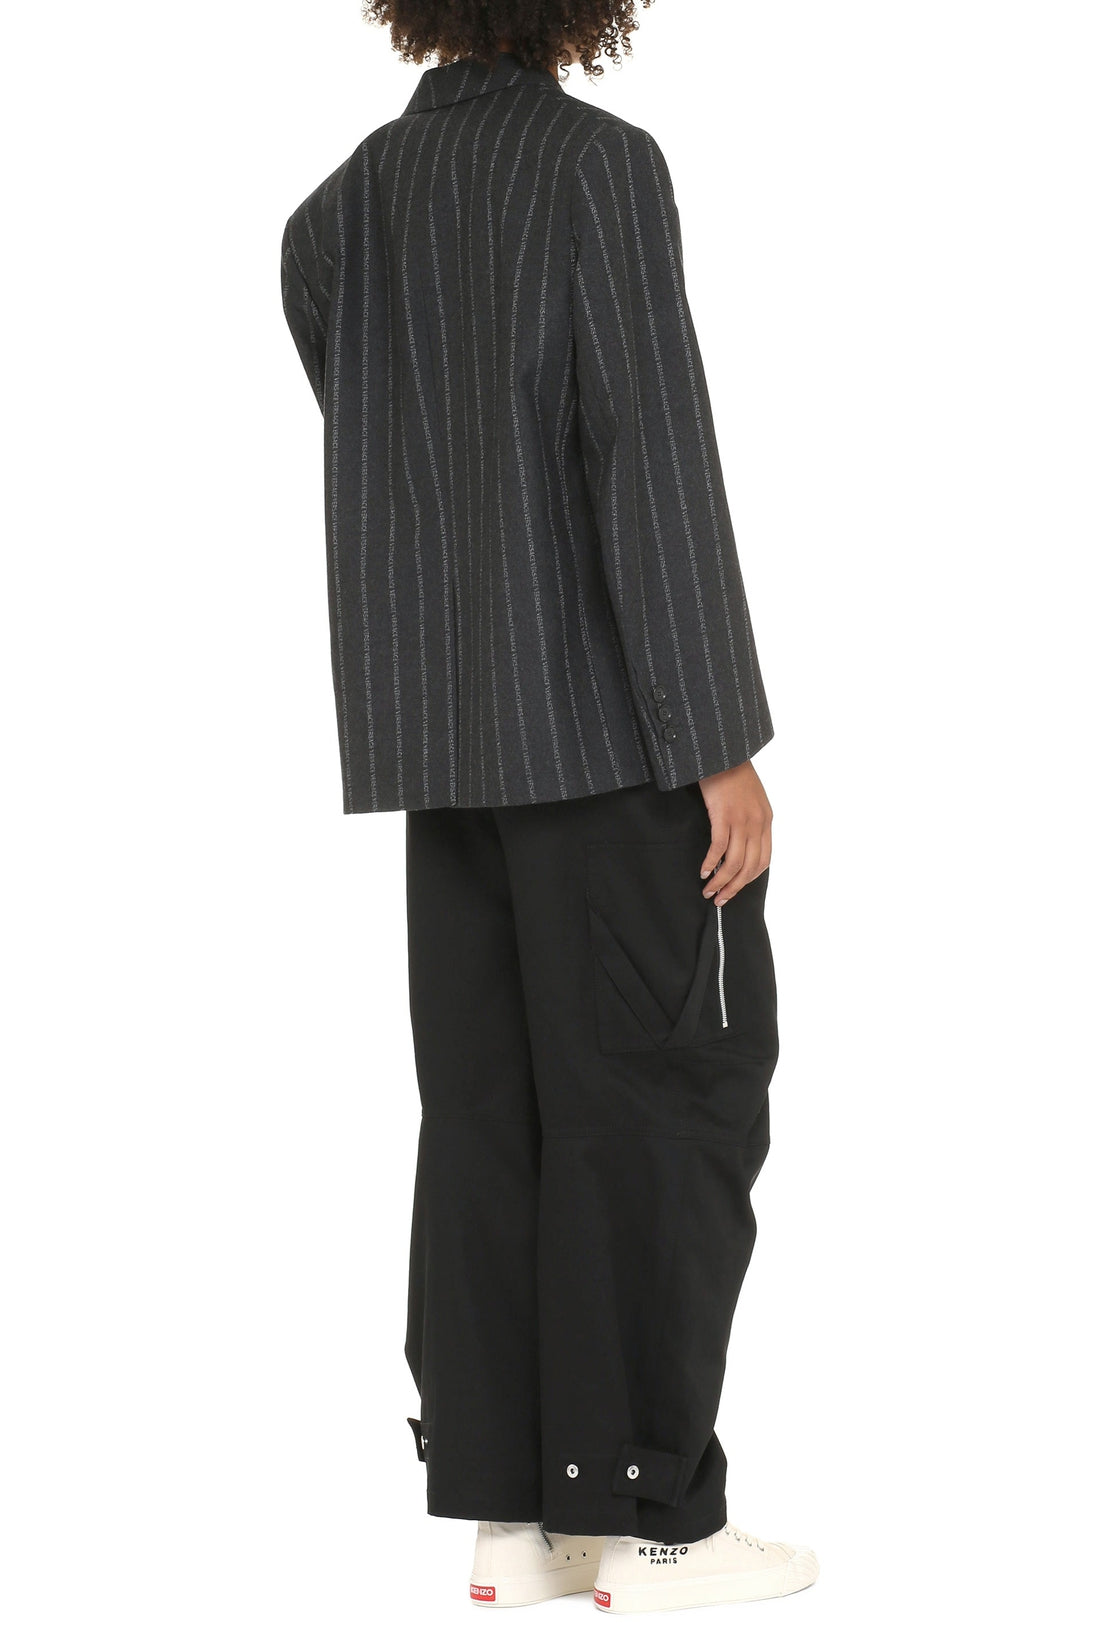 Versace-OUTLET-SALE-Wool pinstripe blazer-ARCHIVIST